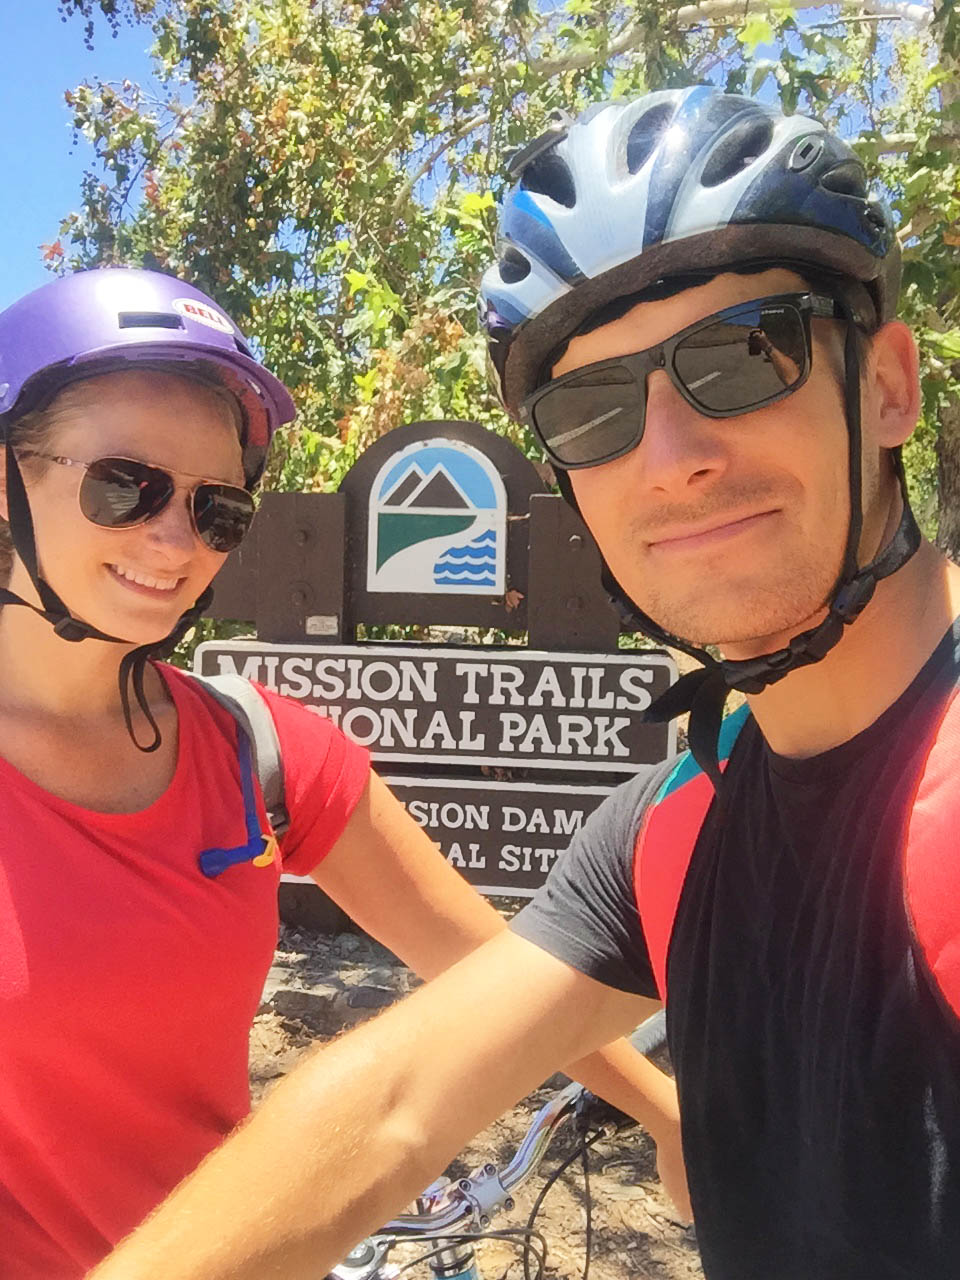 Mission Trails biking